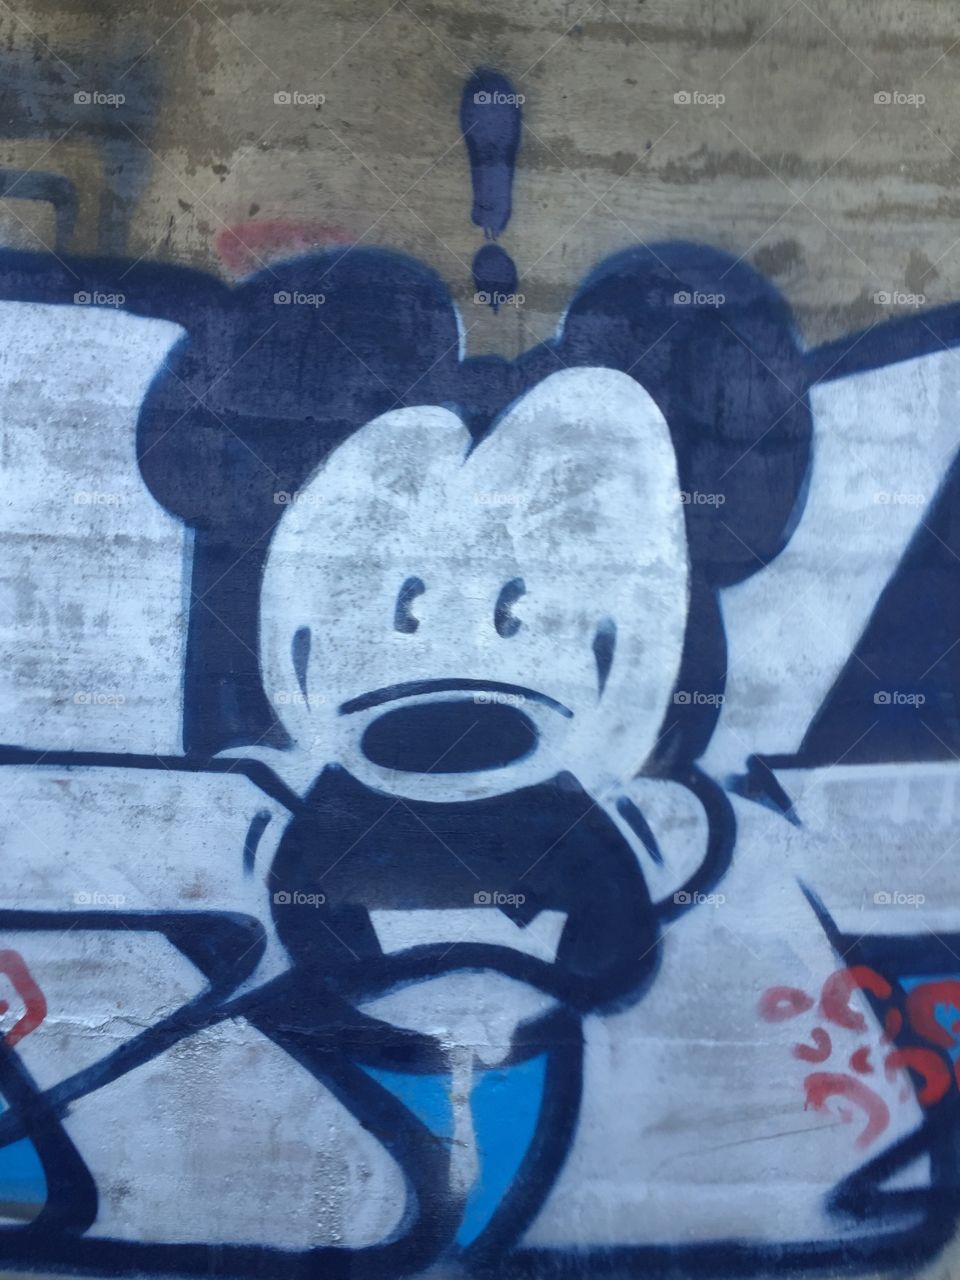 Graffiti, Urban, Street, Vandalism, Wall